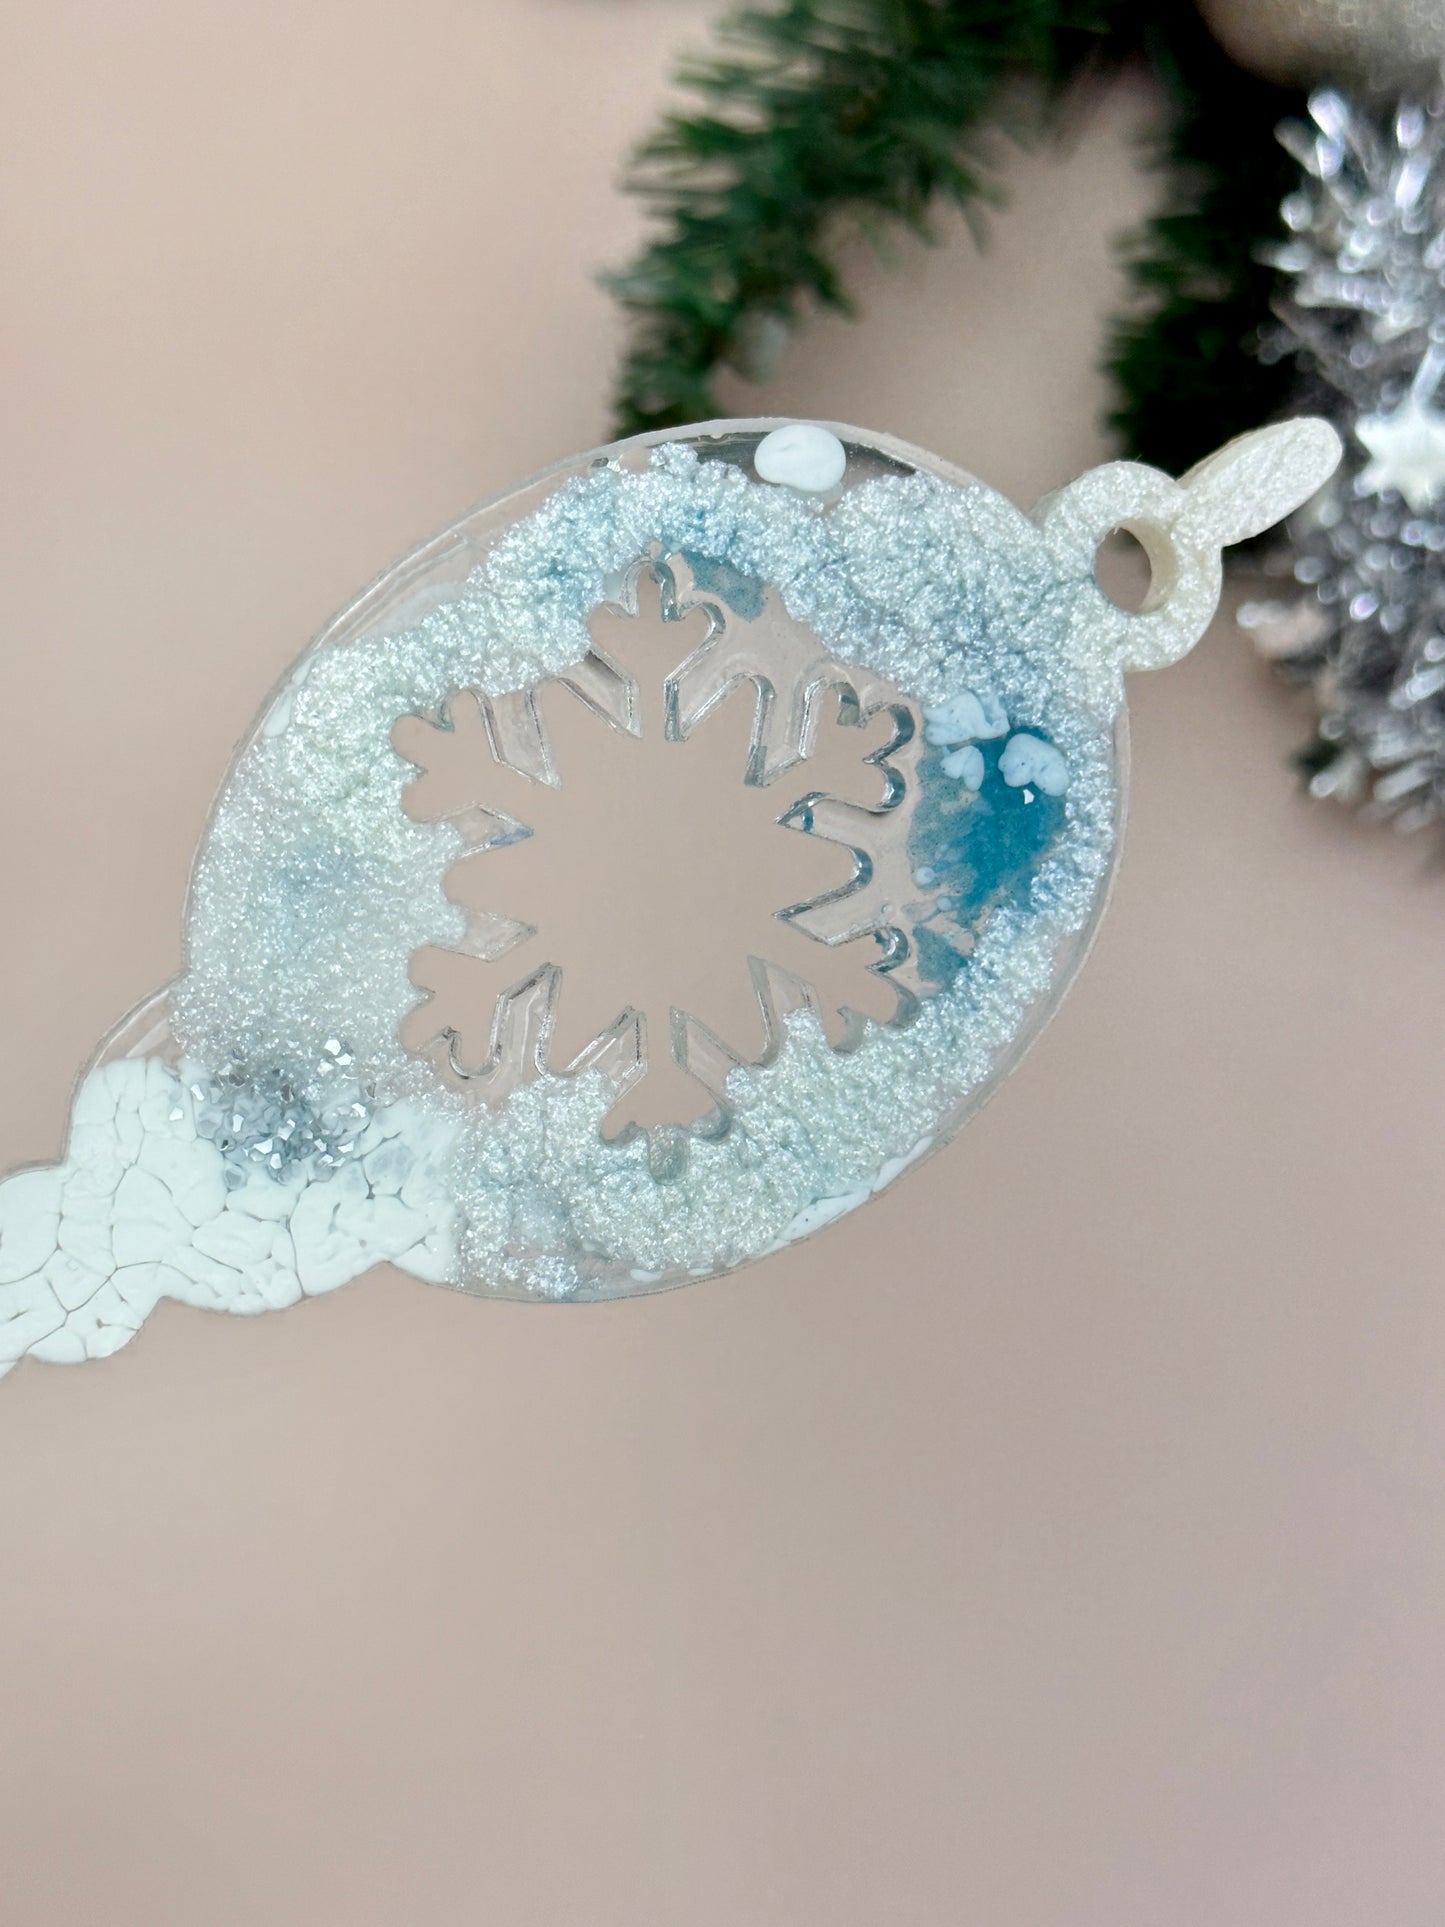 Festliche Kerzenschneeflocken: Große Silikonharzform für weihnachtliche Bastelarbeiten, Geschenke und DIY-Dekoration